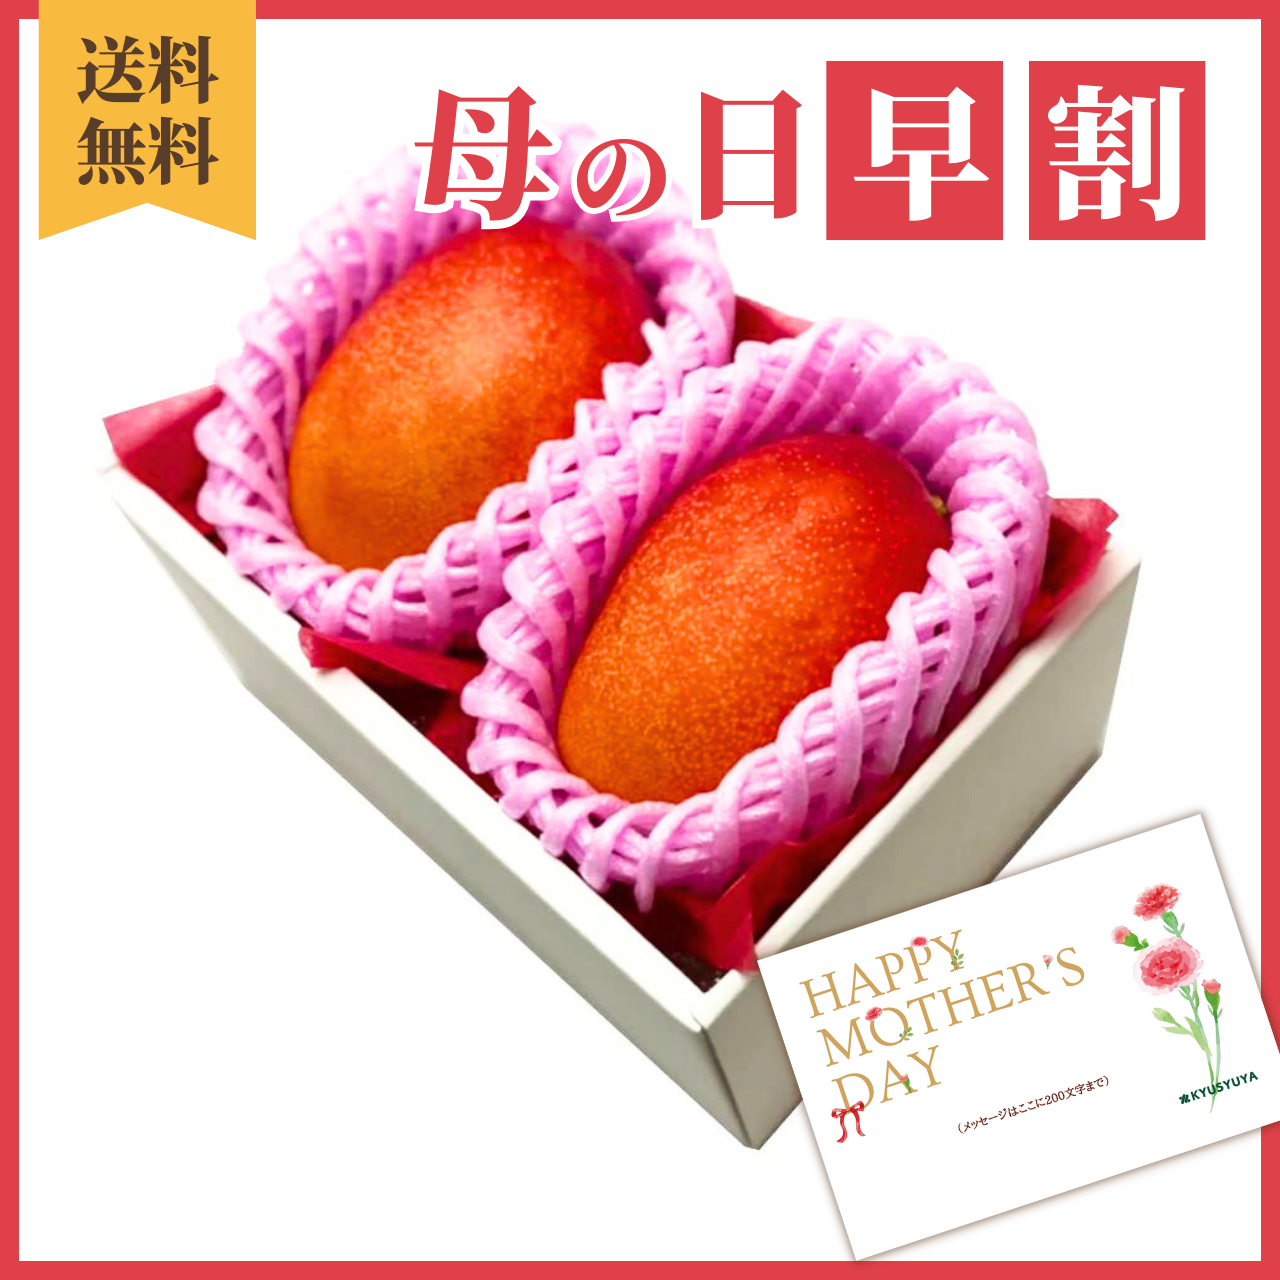 宮崎県産 完熟マンゴー 2Lサイズ 2パック入り タイムセール - 果物